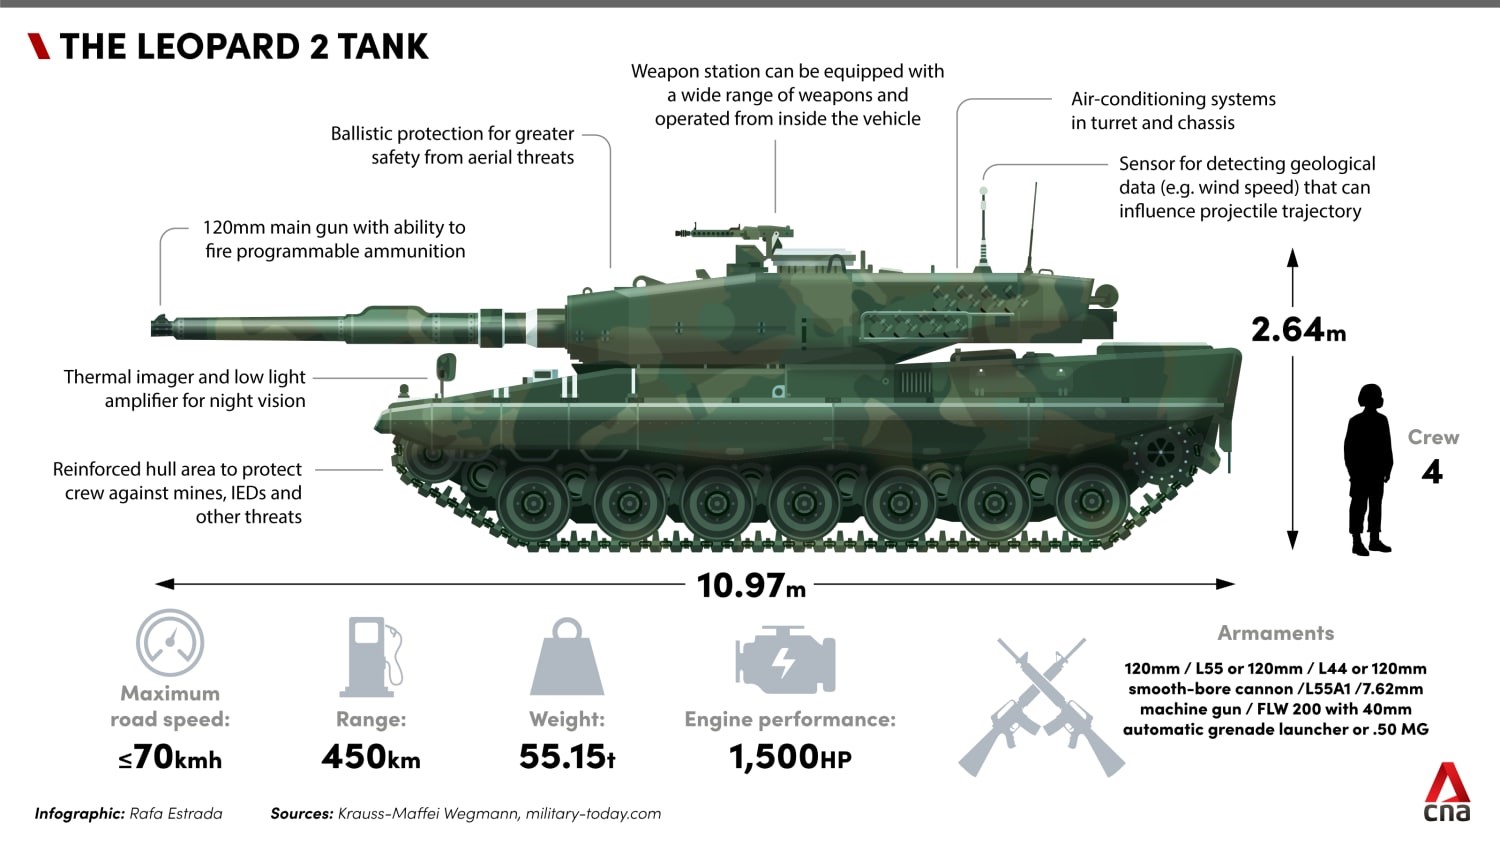  4) Για ποιο λόγο γίνεται τόσος ντόρος για τα Leopard-2; Το παραπάνω γράφημα δίνει την απάντηση. Πρόκειται για αξιόπιστα οχήματα, σε χρήση σε όλη την Ευρώπη, με αρκετά πλεονεκτήματα τόσο σε σχέση με τα ρωσικά άρματα, όσο και σε σχέση με τα αντίγραφά του τα M1-Abrams από τις ΗΠΑ. Δεν αποκλείεται η πίεση των ΗΠΑ να αποσκοπούσε στην αποδυνάμωση και της γερμανικής αμυντικής βιομηχανίας και την ενίσχυση της Ευρώπης με αμερικανικά οχήματα. Επιπλέον το συγκεκριμένο όχημα μπορεί να πάρει βλήματα απεμπλουτισμένου ουρανίου…